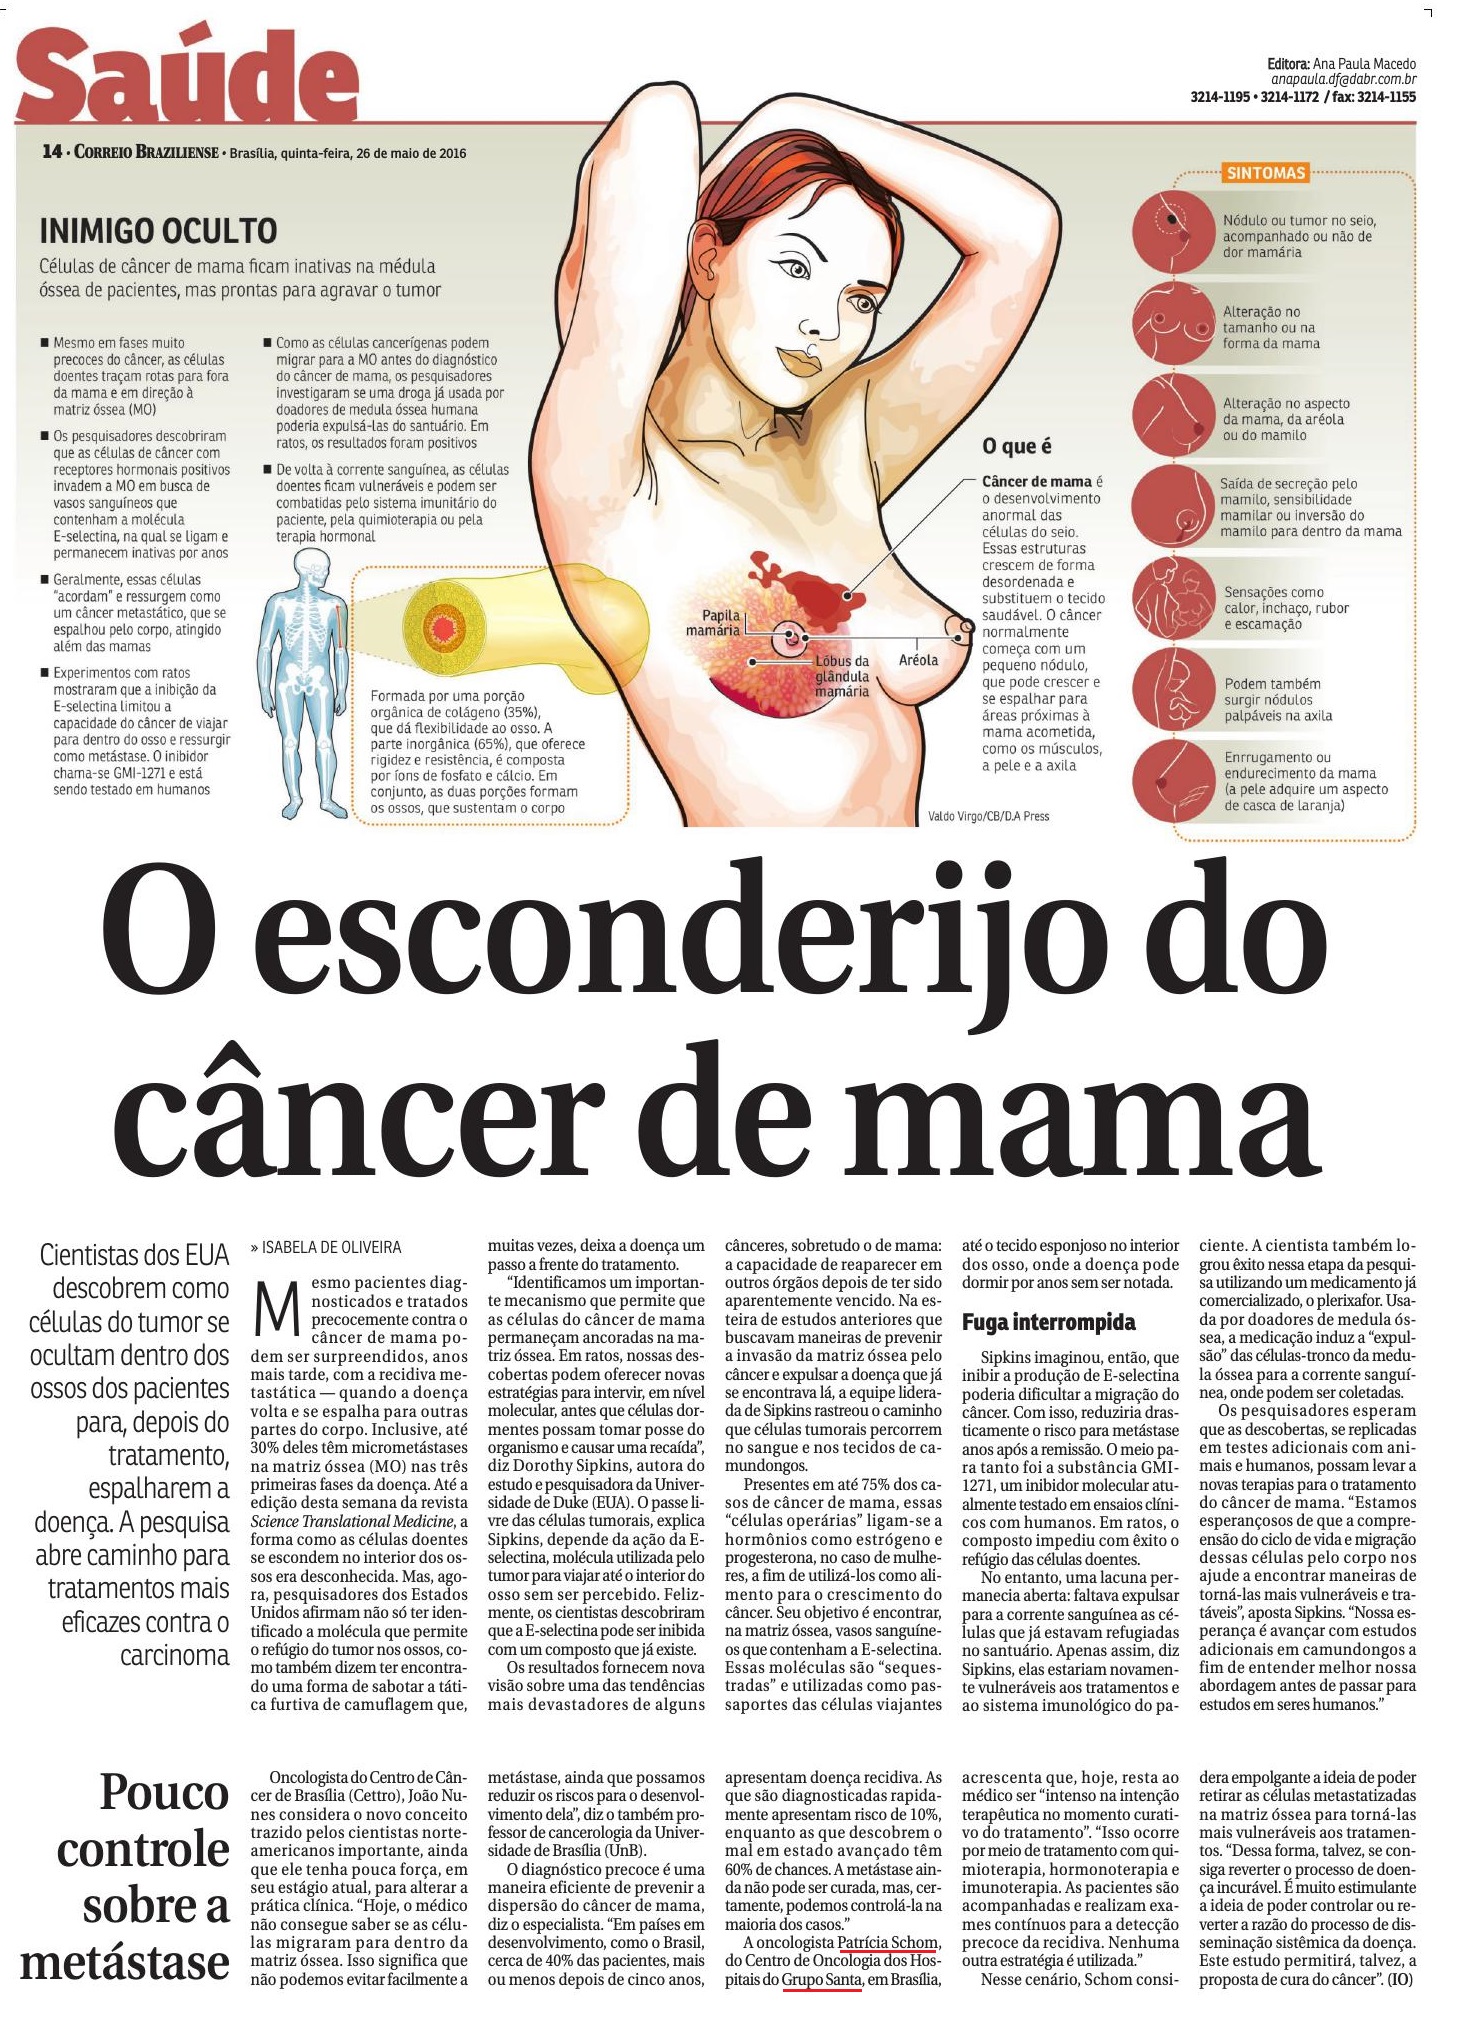 Correio Braziliense - Câncer Mama - 26 de maio de 2016